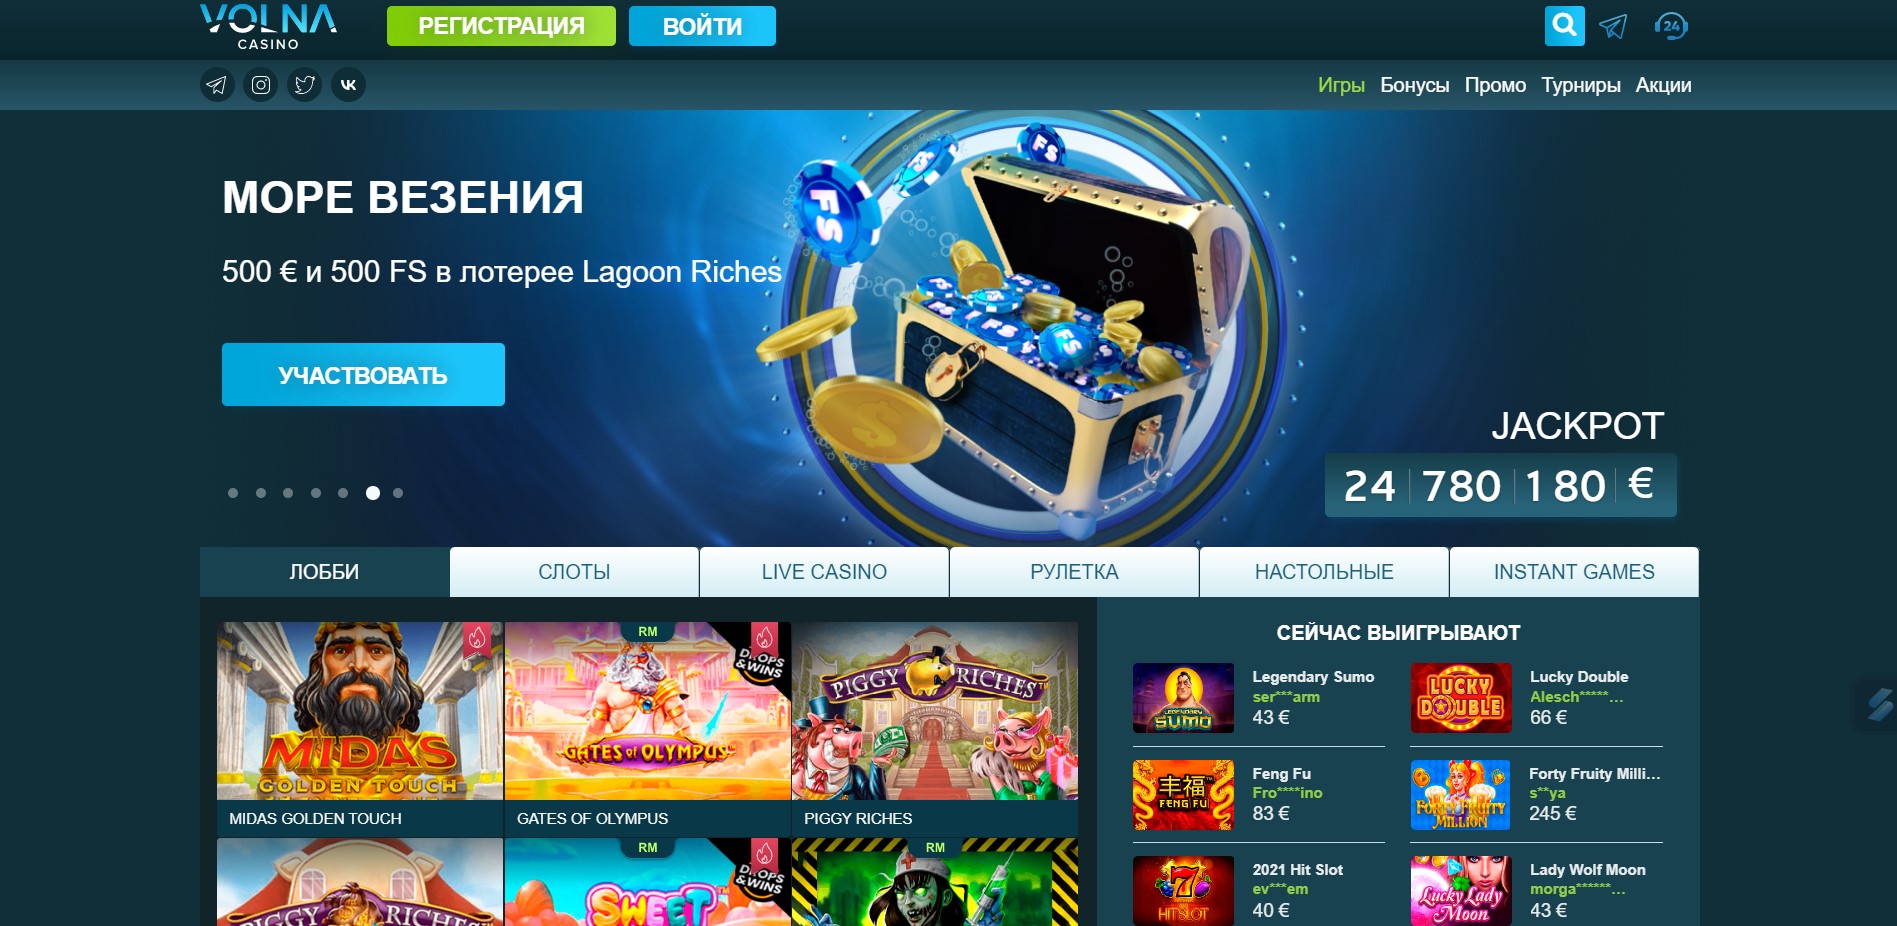 Интересные факты, о которых я уверен, вы никогда не знали Pin-Up Games Kazakhstan